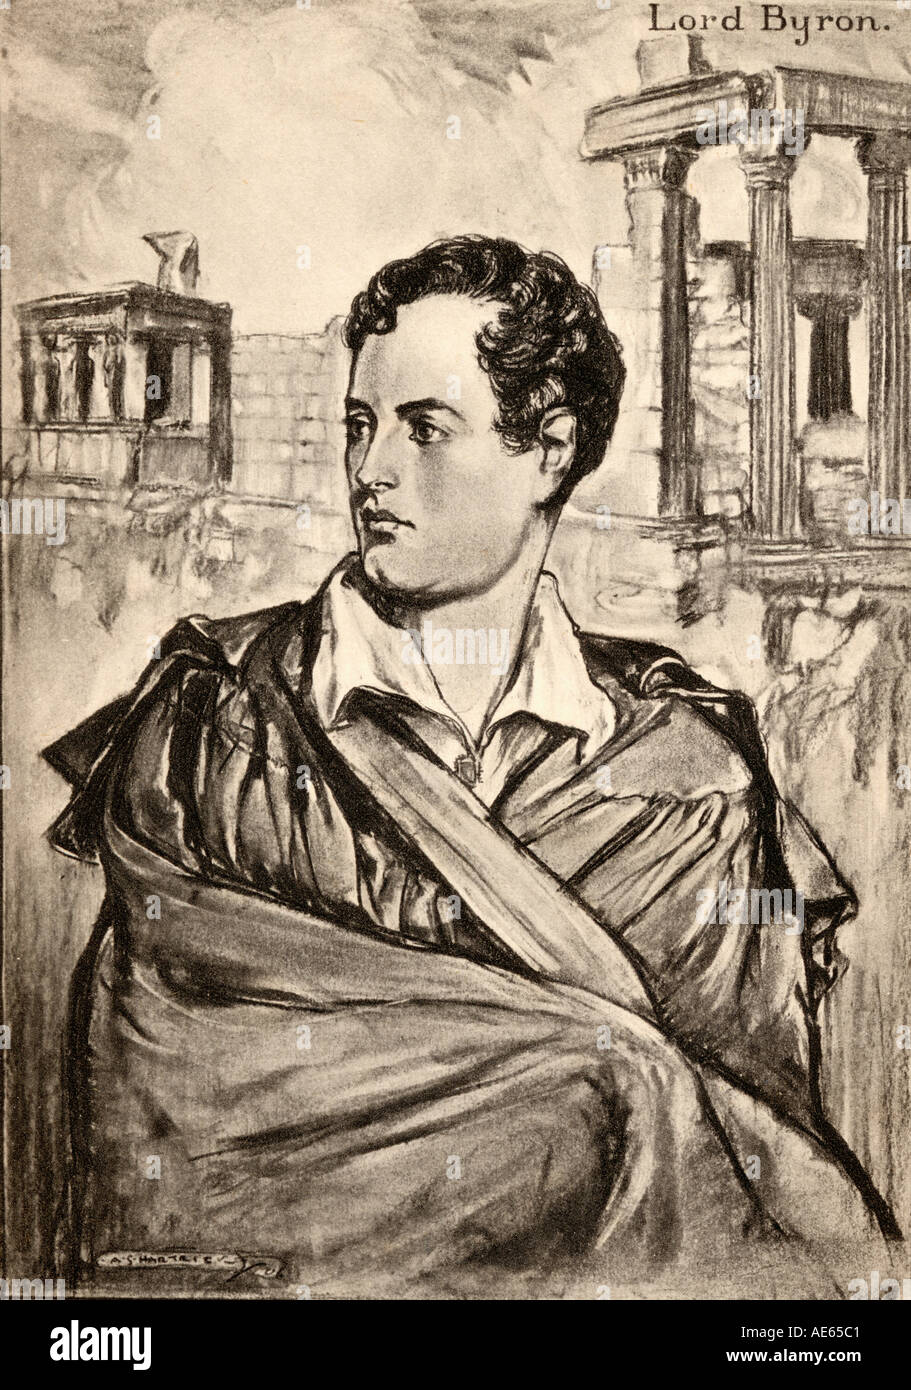 George Gordon Byron, 6e baron Byron, alias Lord Byron, 1788 - 1824. Noble britannique, poète, homme politique et par les pairs. Banque D'Images